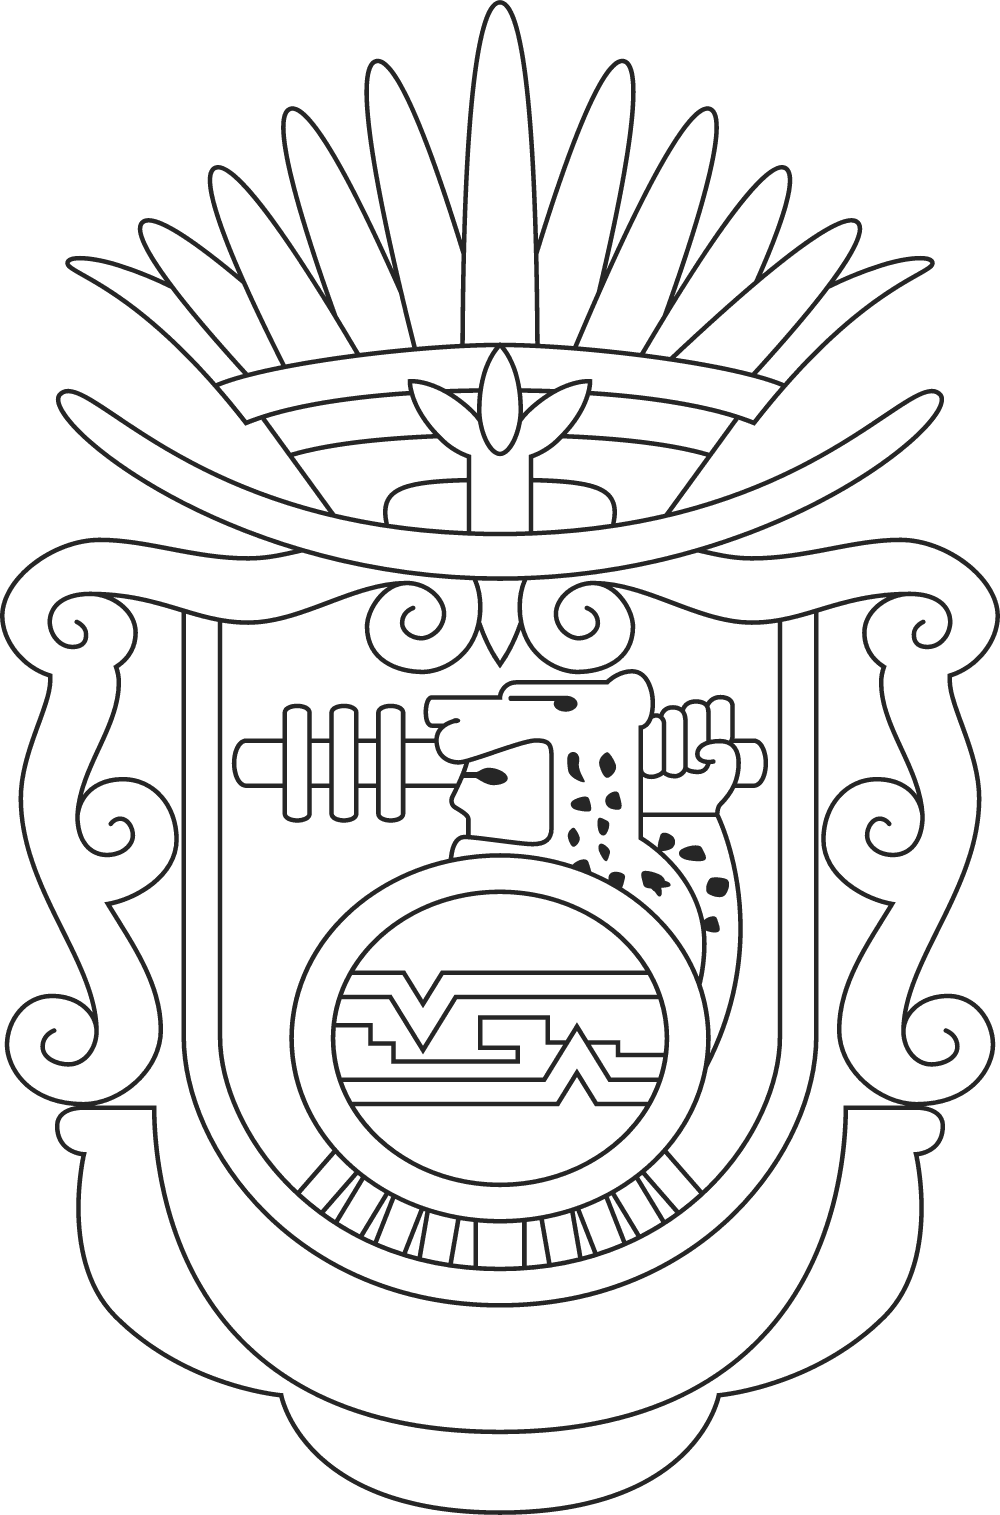 Estado de Guerrero Logo download